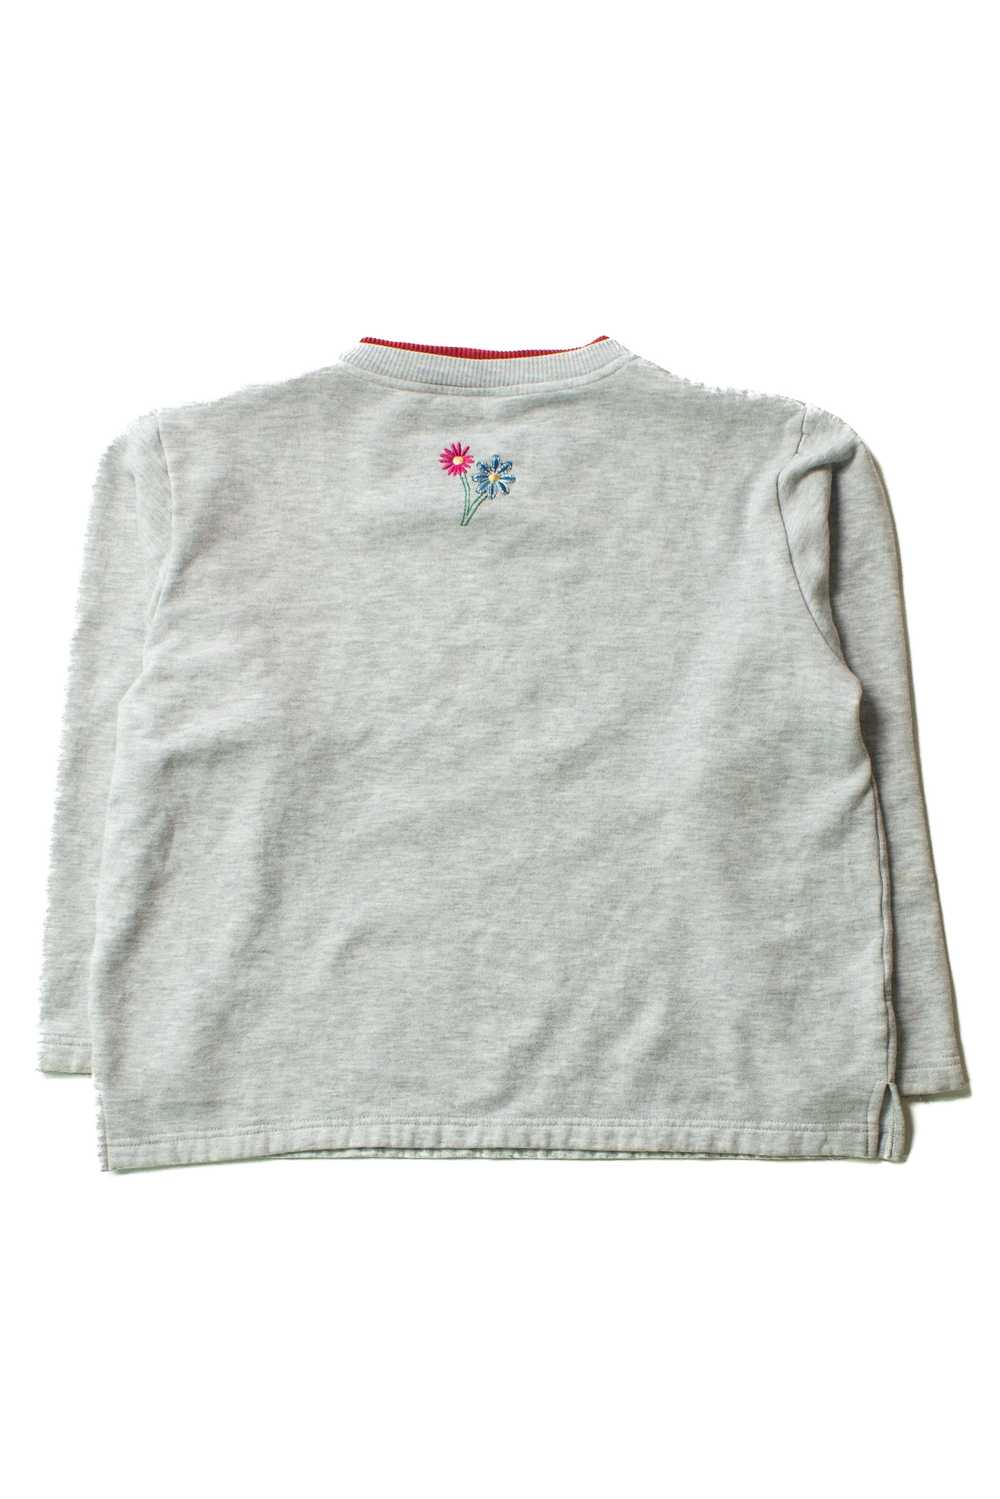 Vintage Embroidered Floral Squares Sweatshirt (19… - image 3